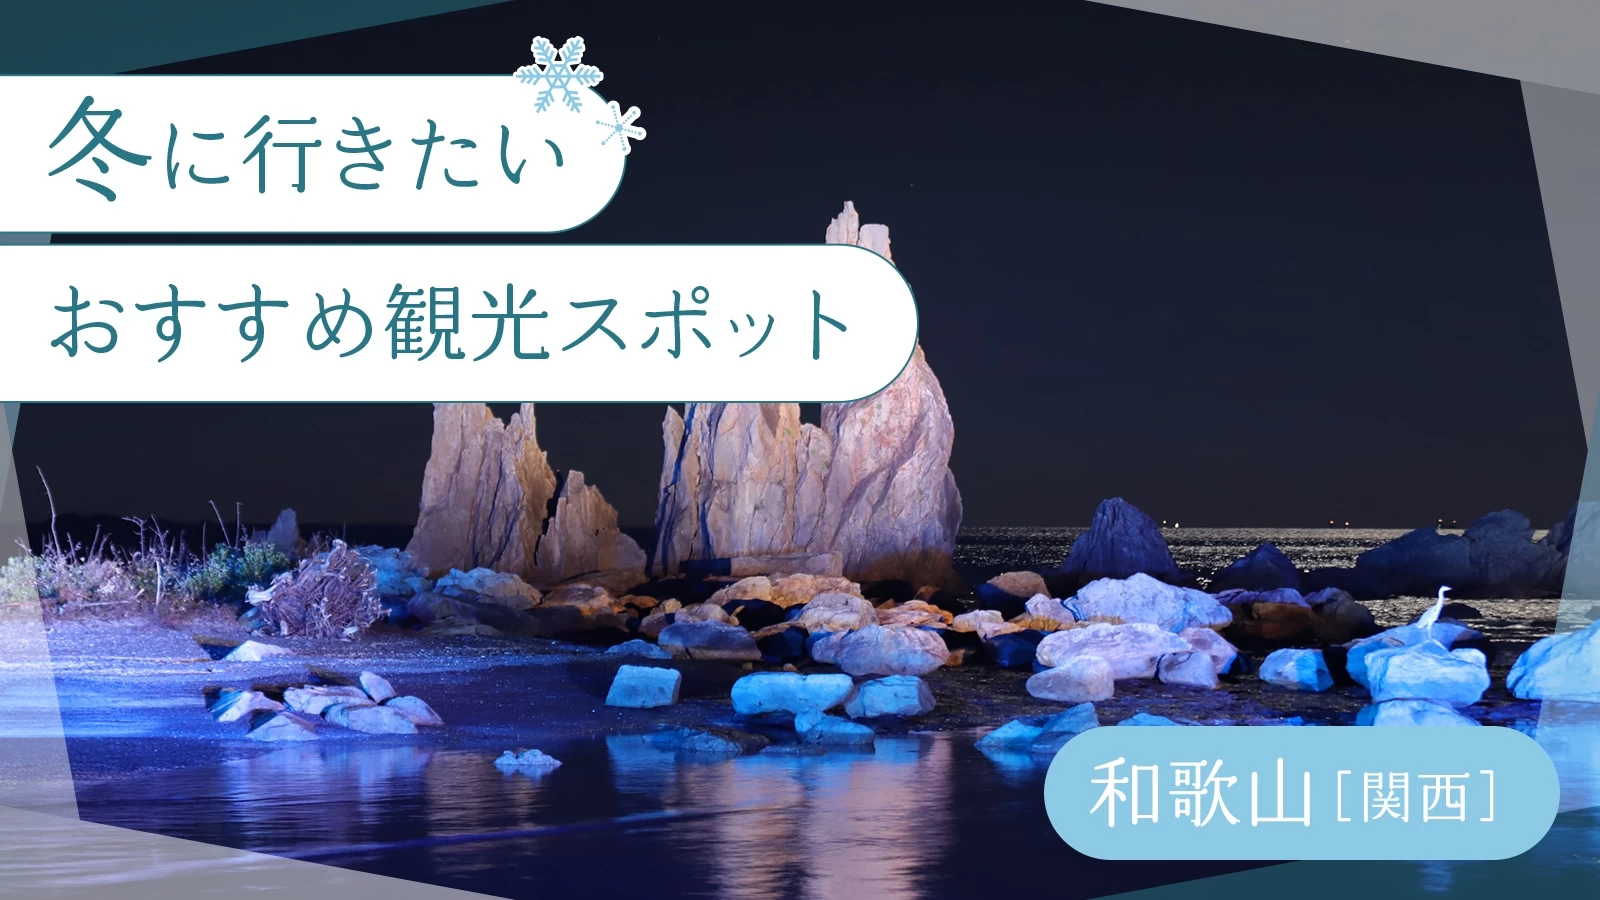 【関西・和歌山】冬に行きたいおすすめ観光スポット18選